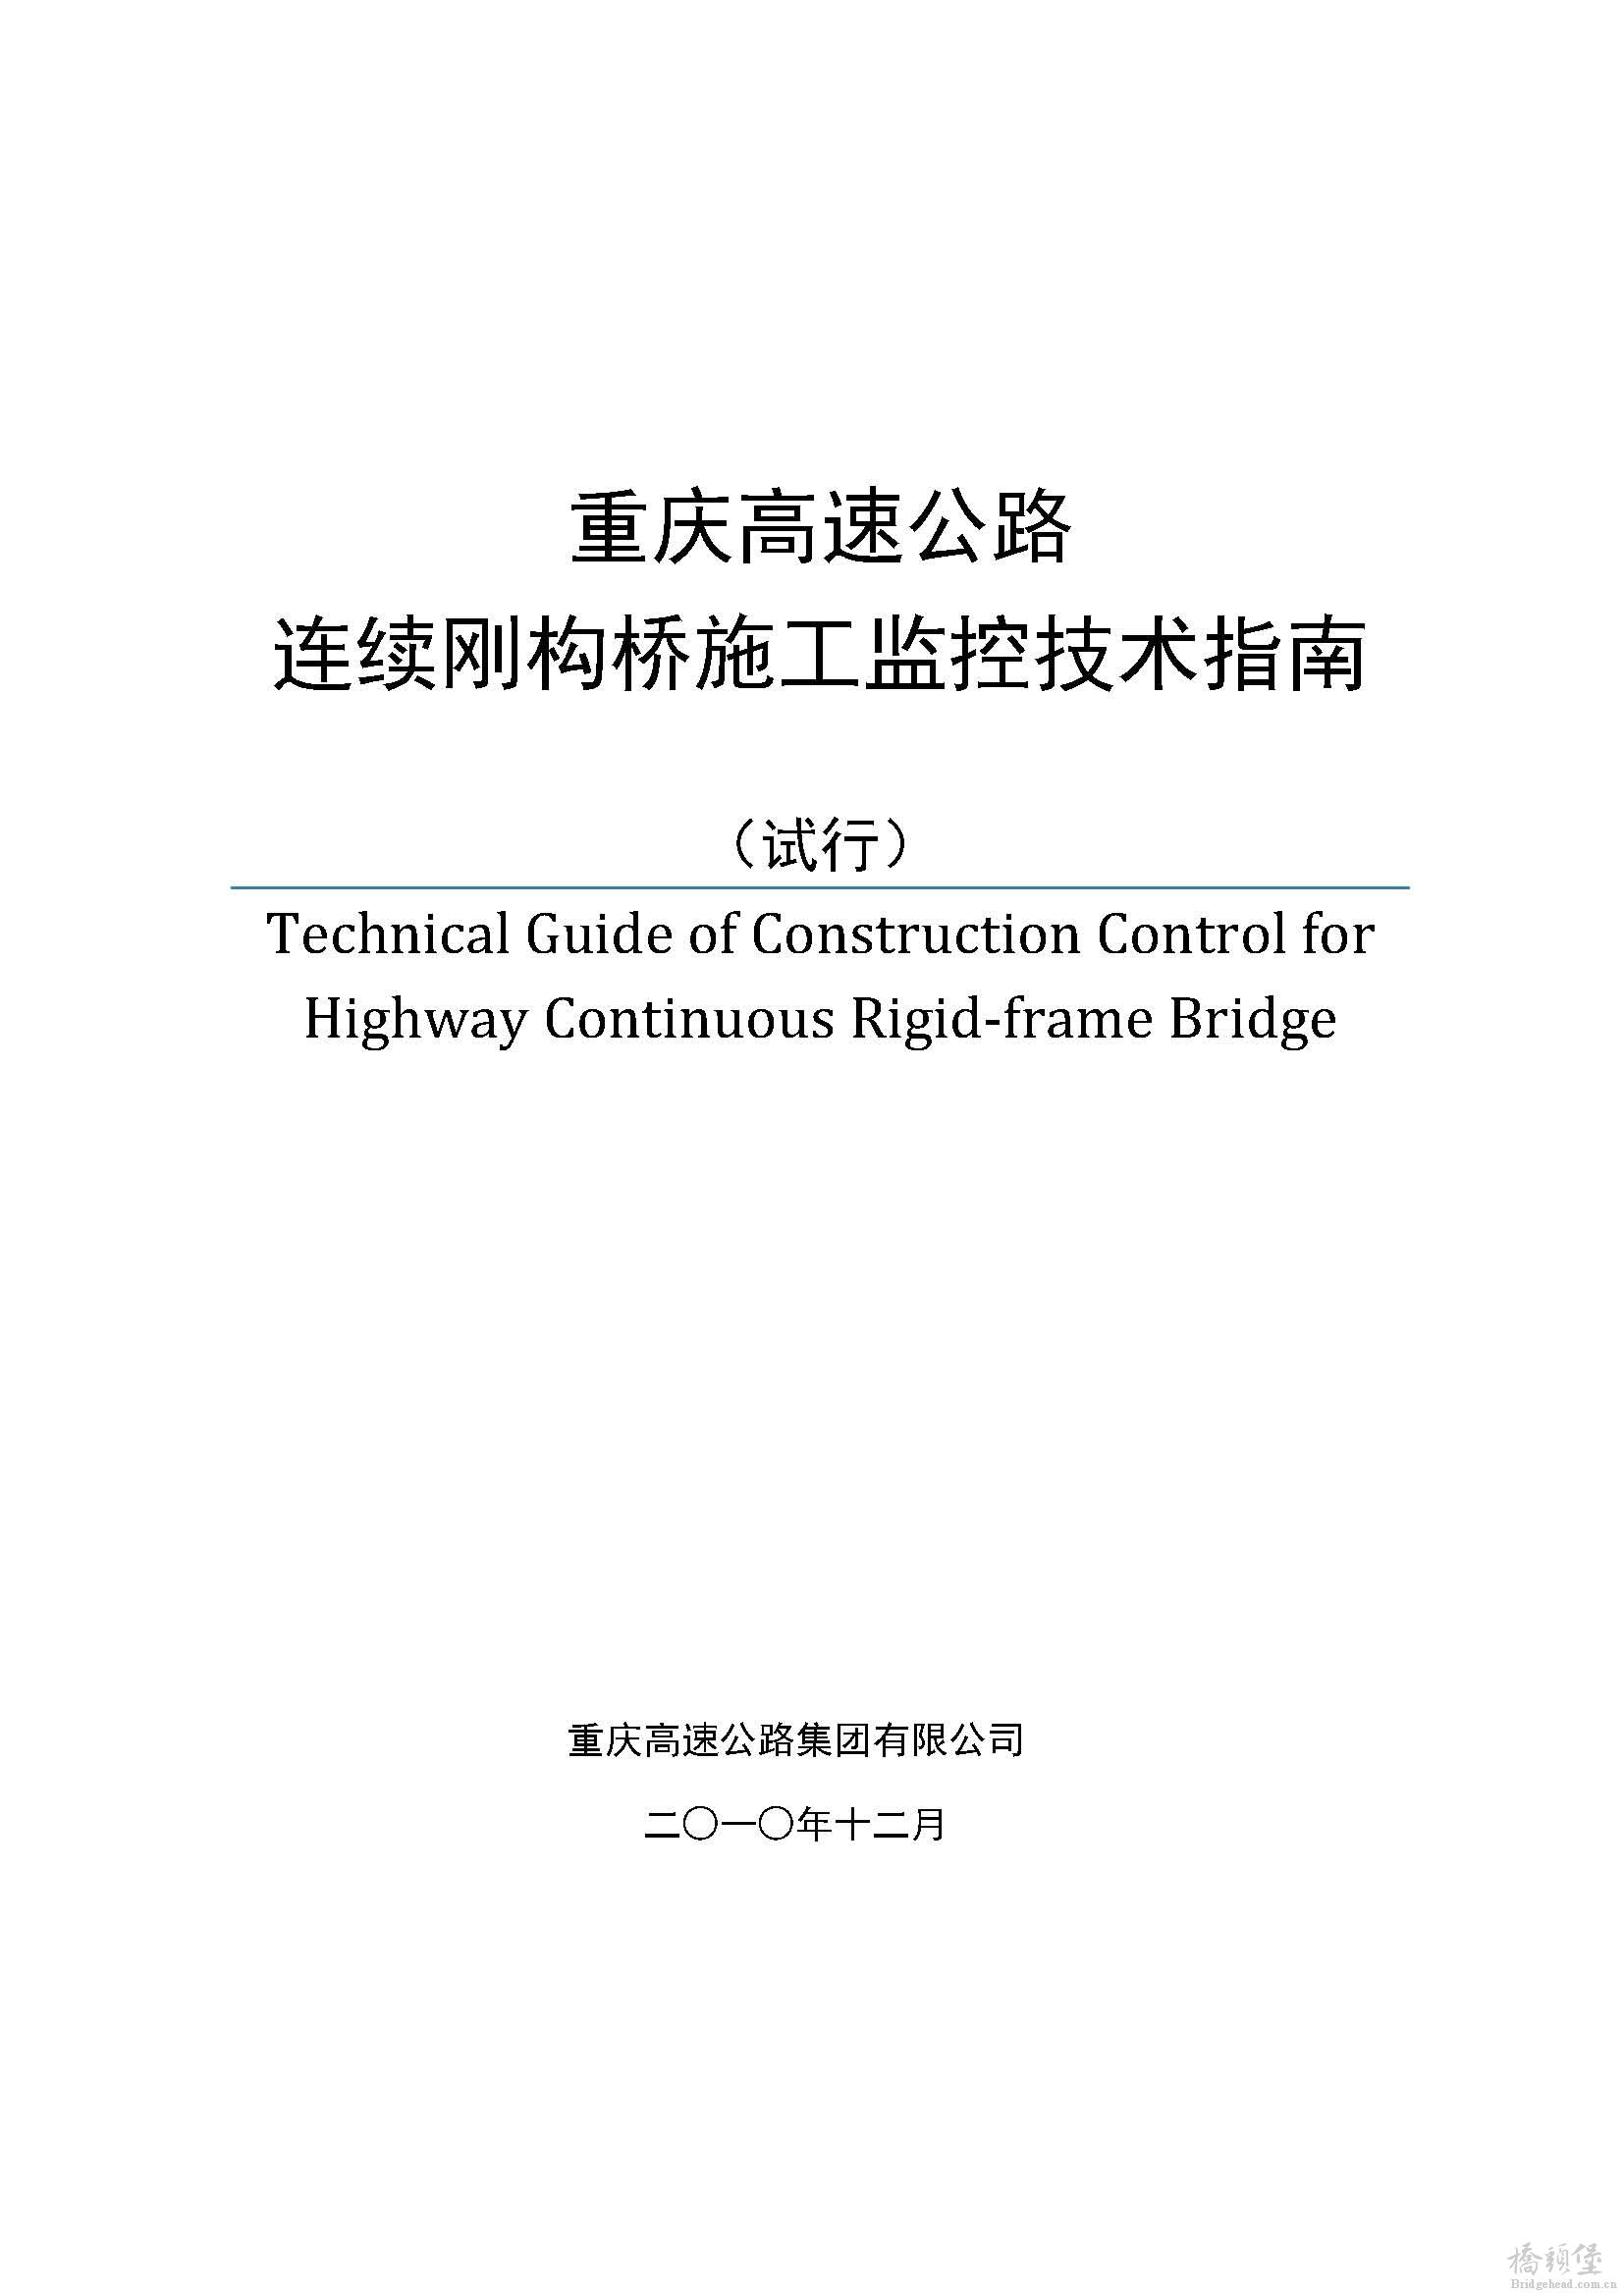 2010重庆高速公路连续刚构桥施工监控技术指南(最终版)_页面_01.jpg